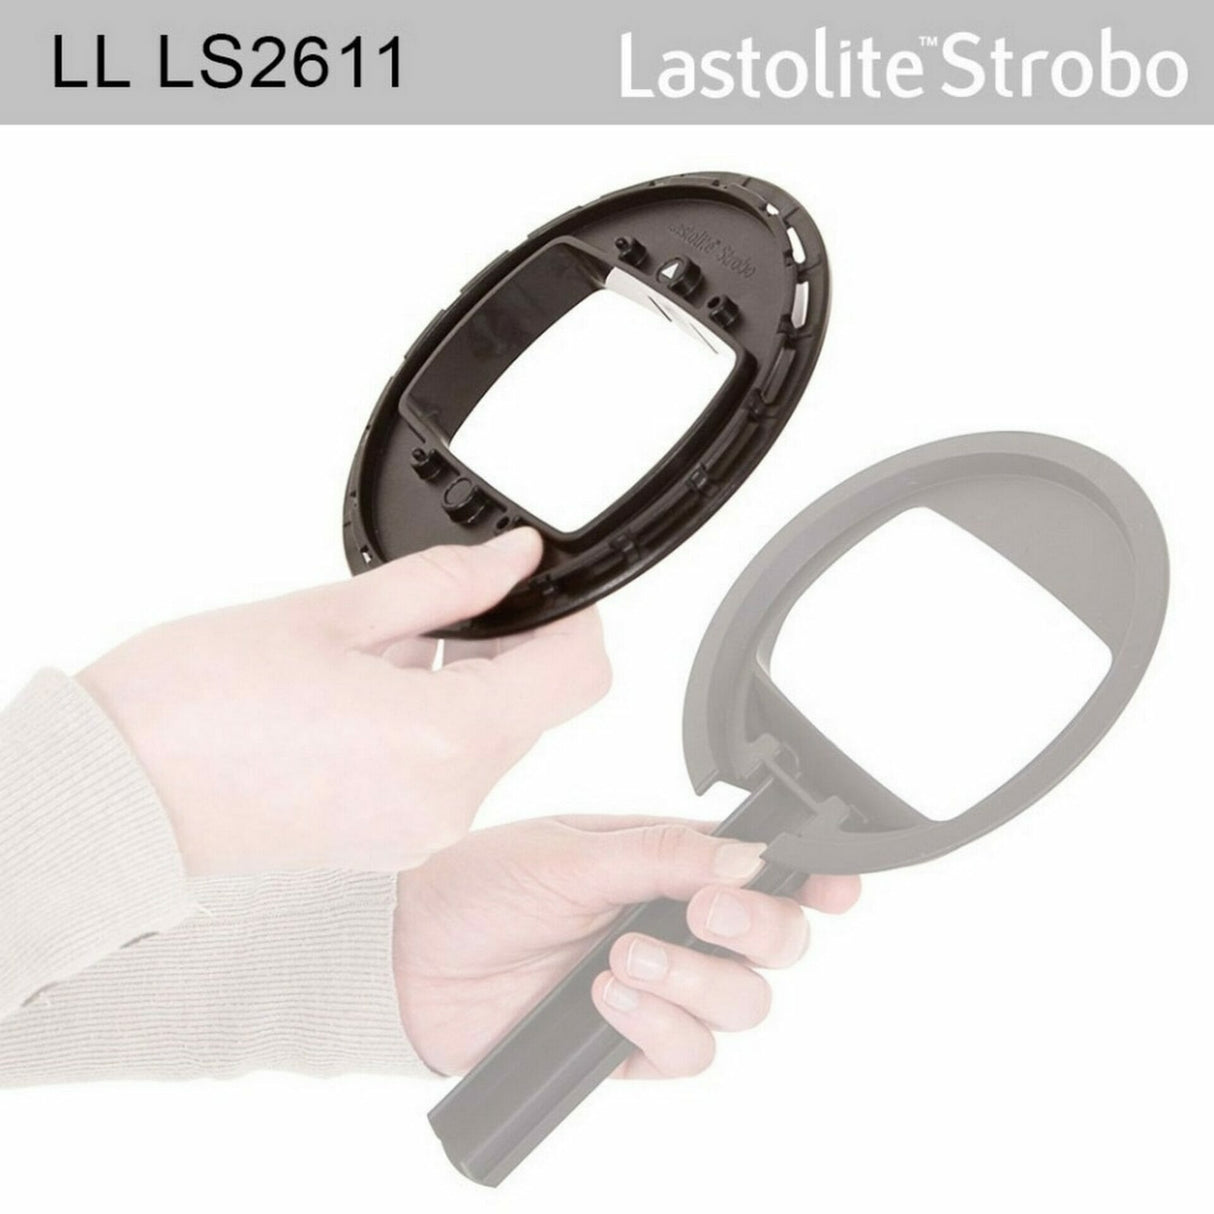 Lastolite LL LS2611 Strobo Ezybox Hotshoe Plate Adapter